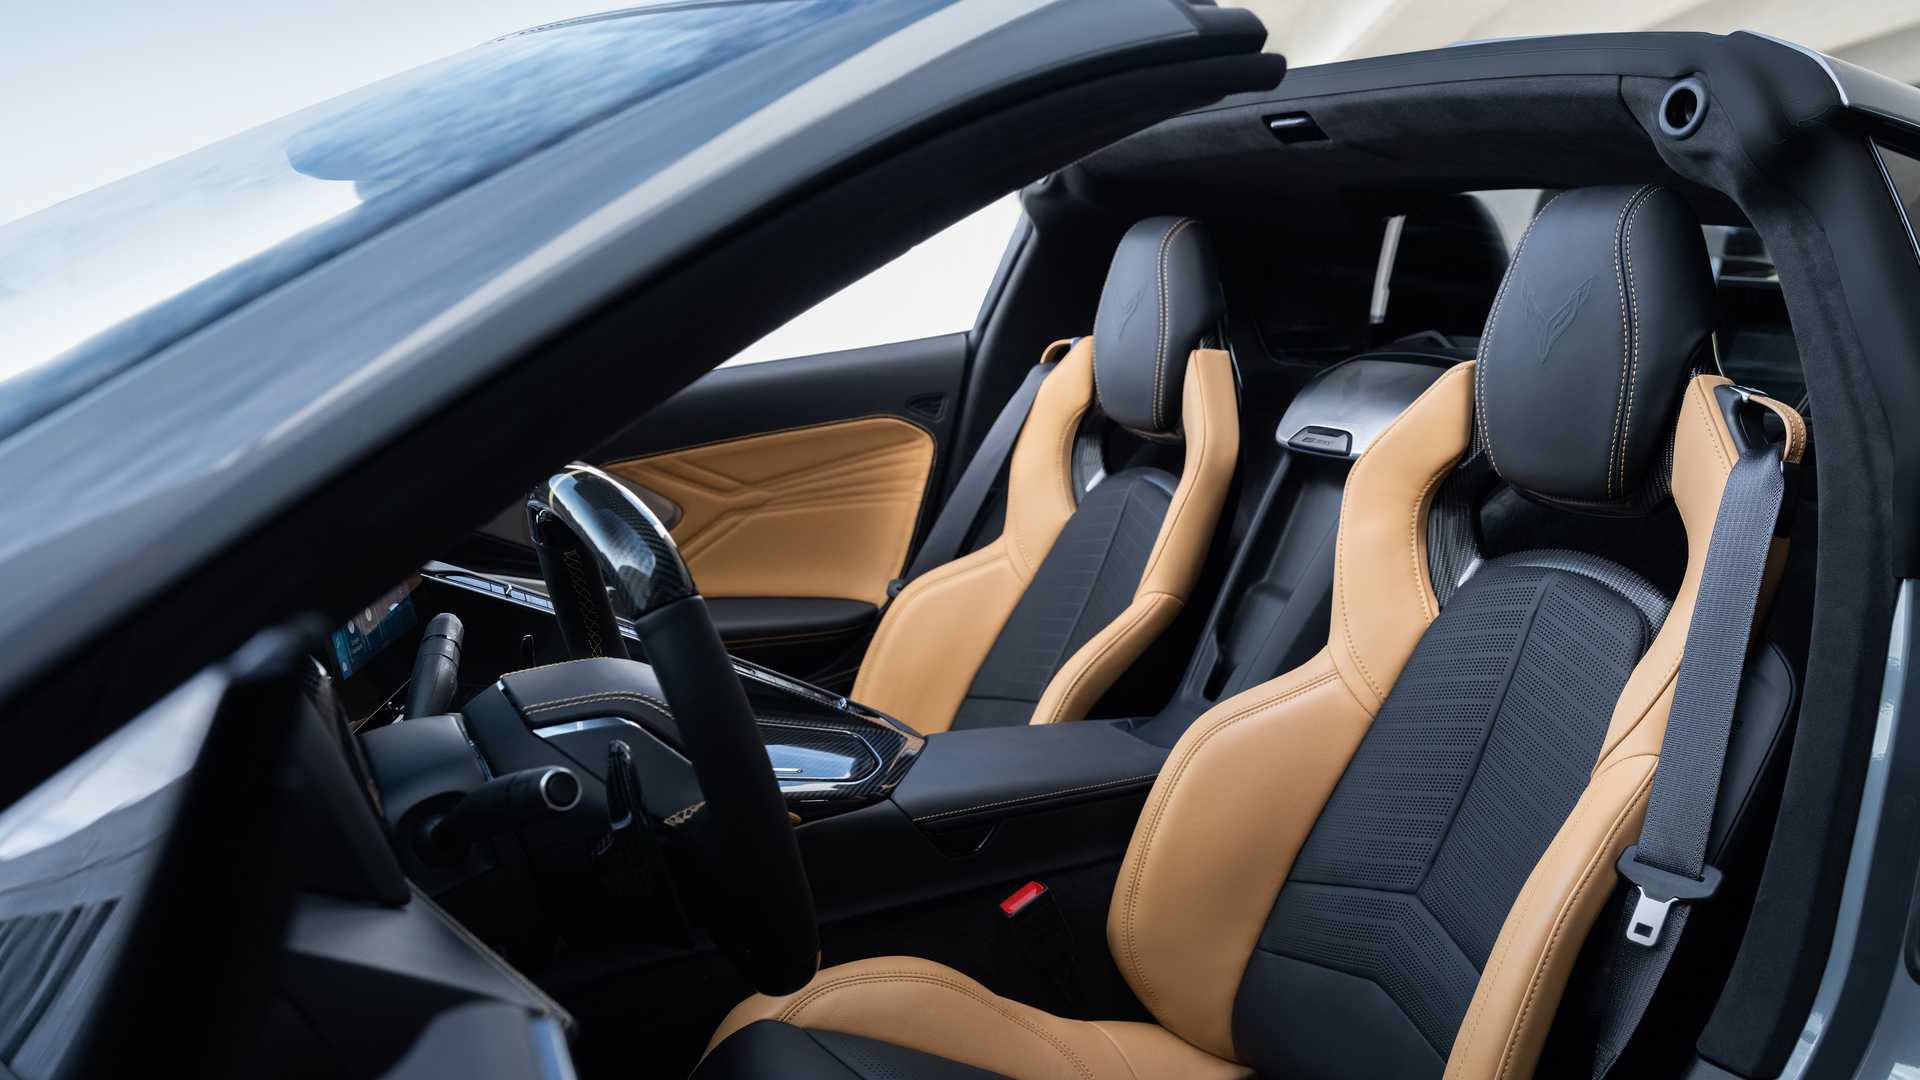 Novo Corvette E-Ray, o mais rápido da história - Foto: Divulgação